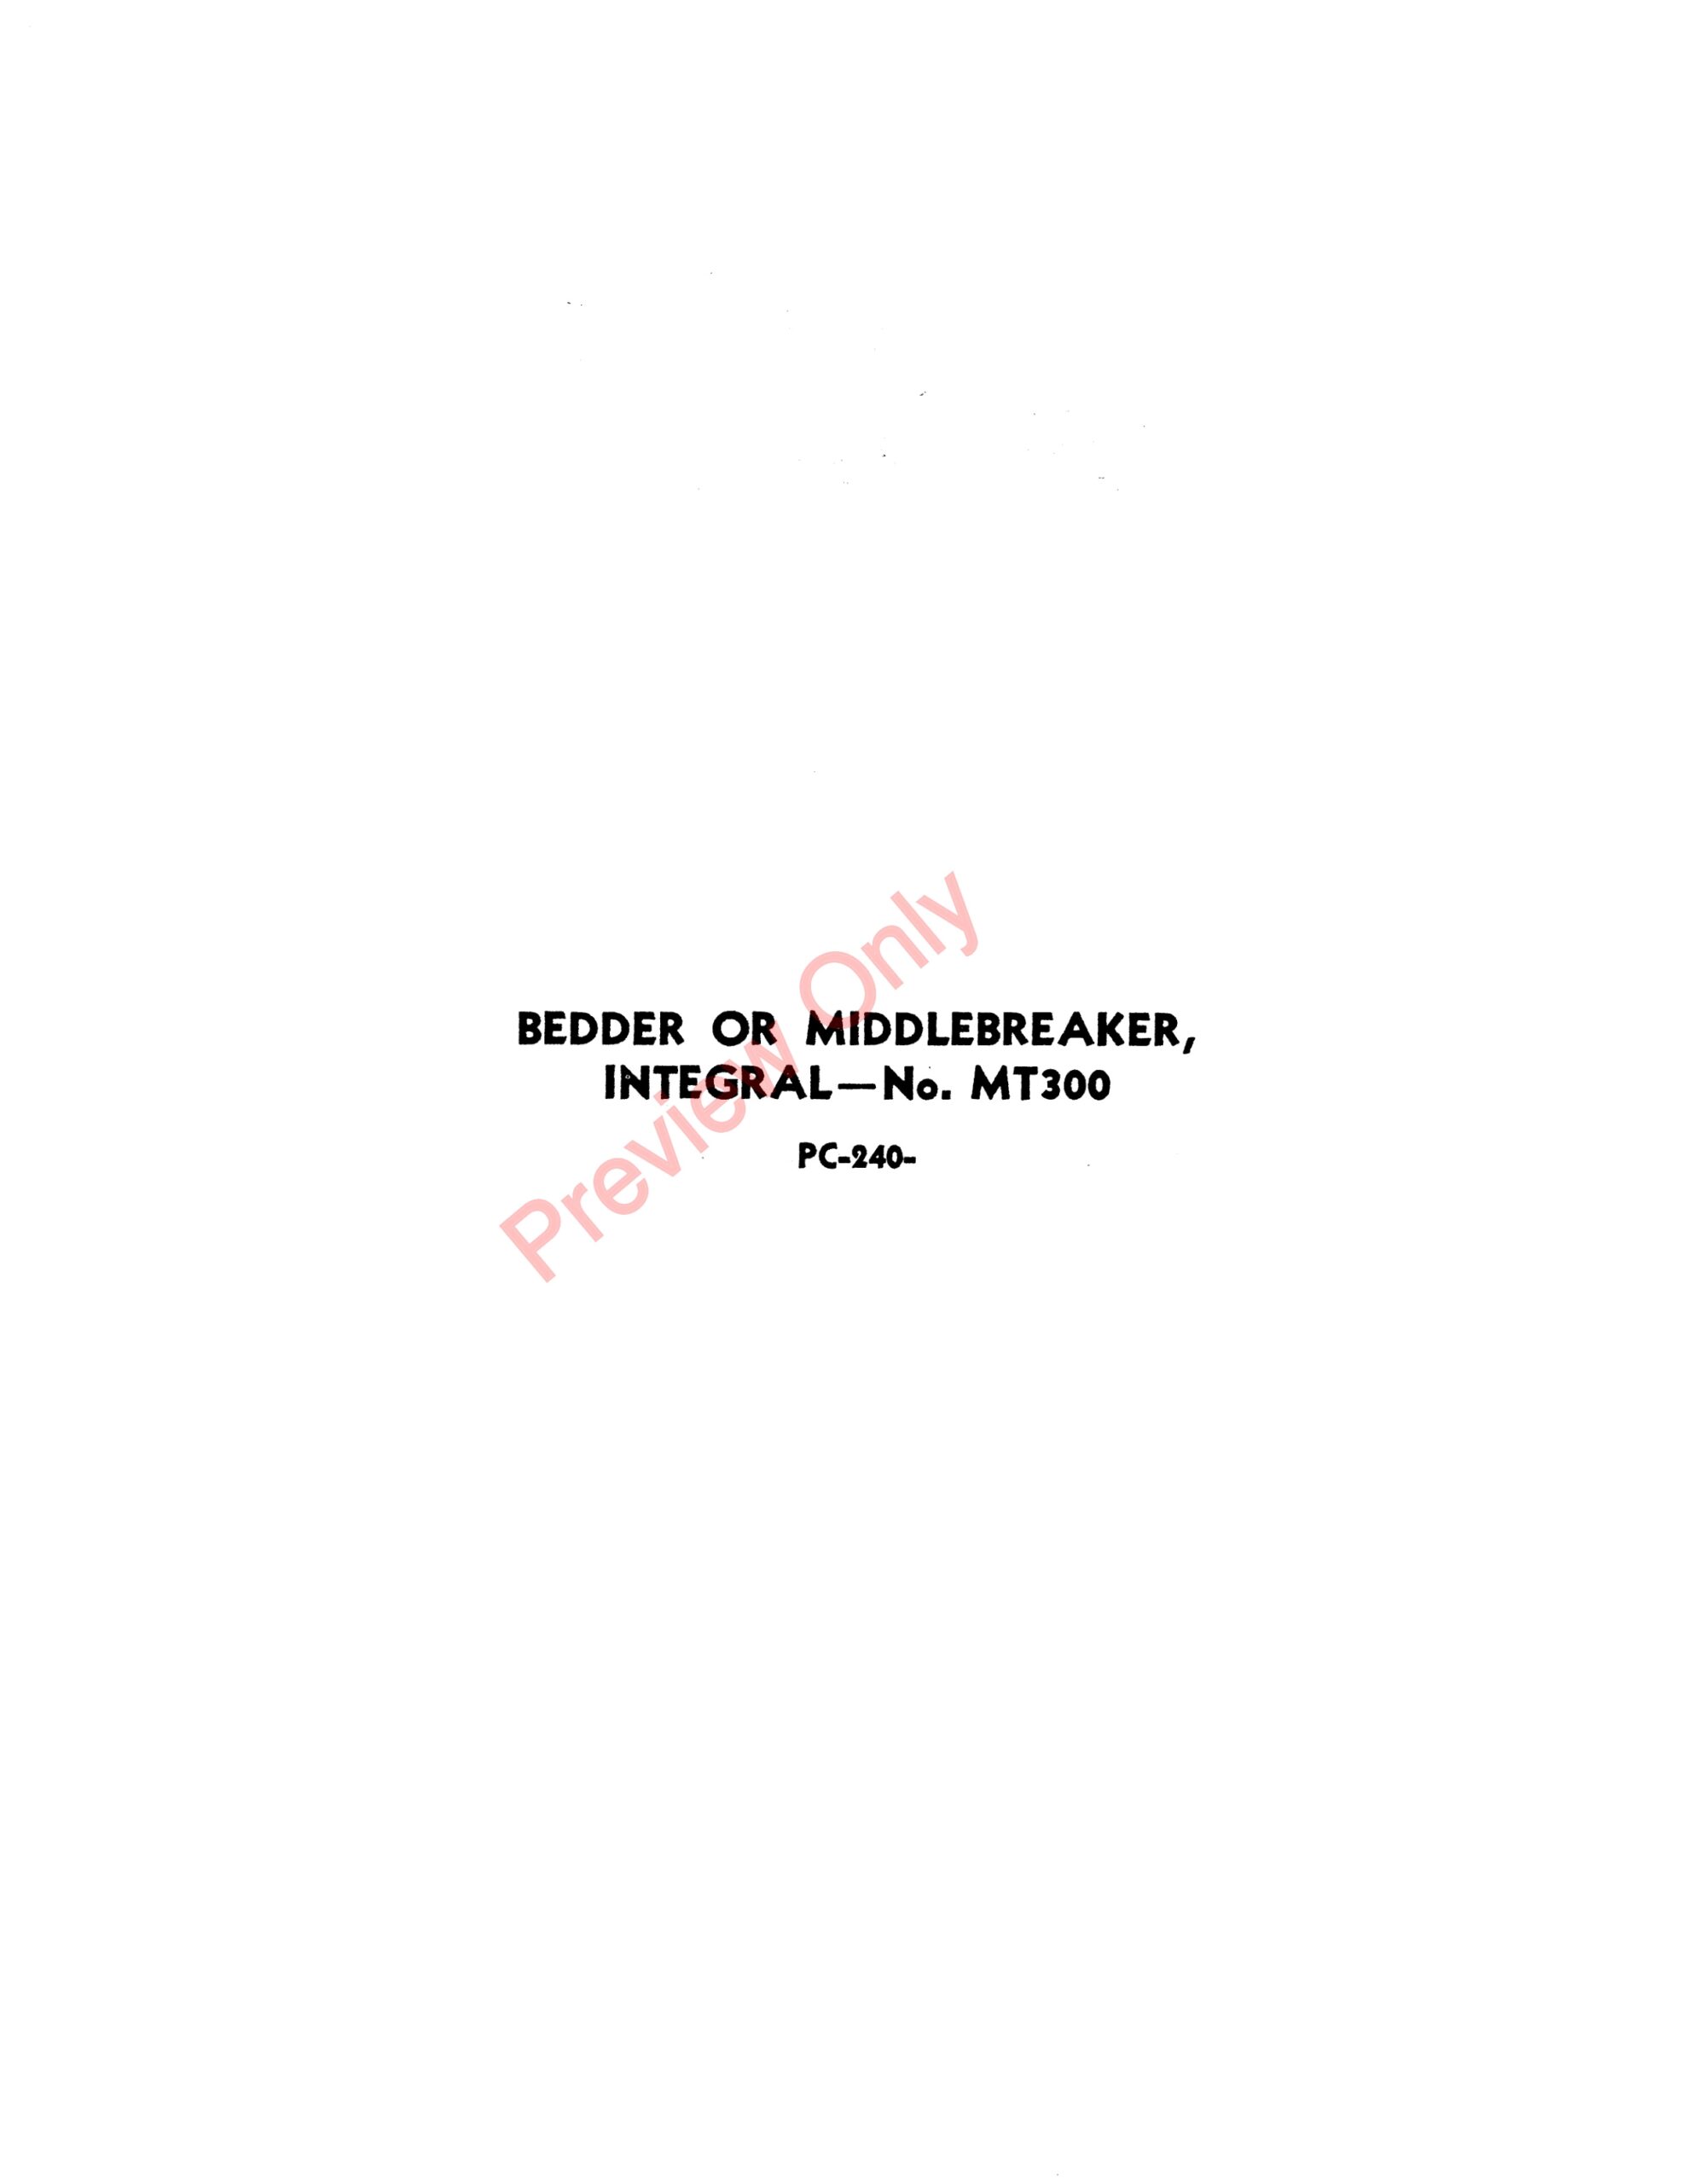 John Deere MT300 Bedder or Middlebreaker Parts Catalog PC240 01MAR52-1